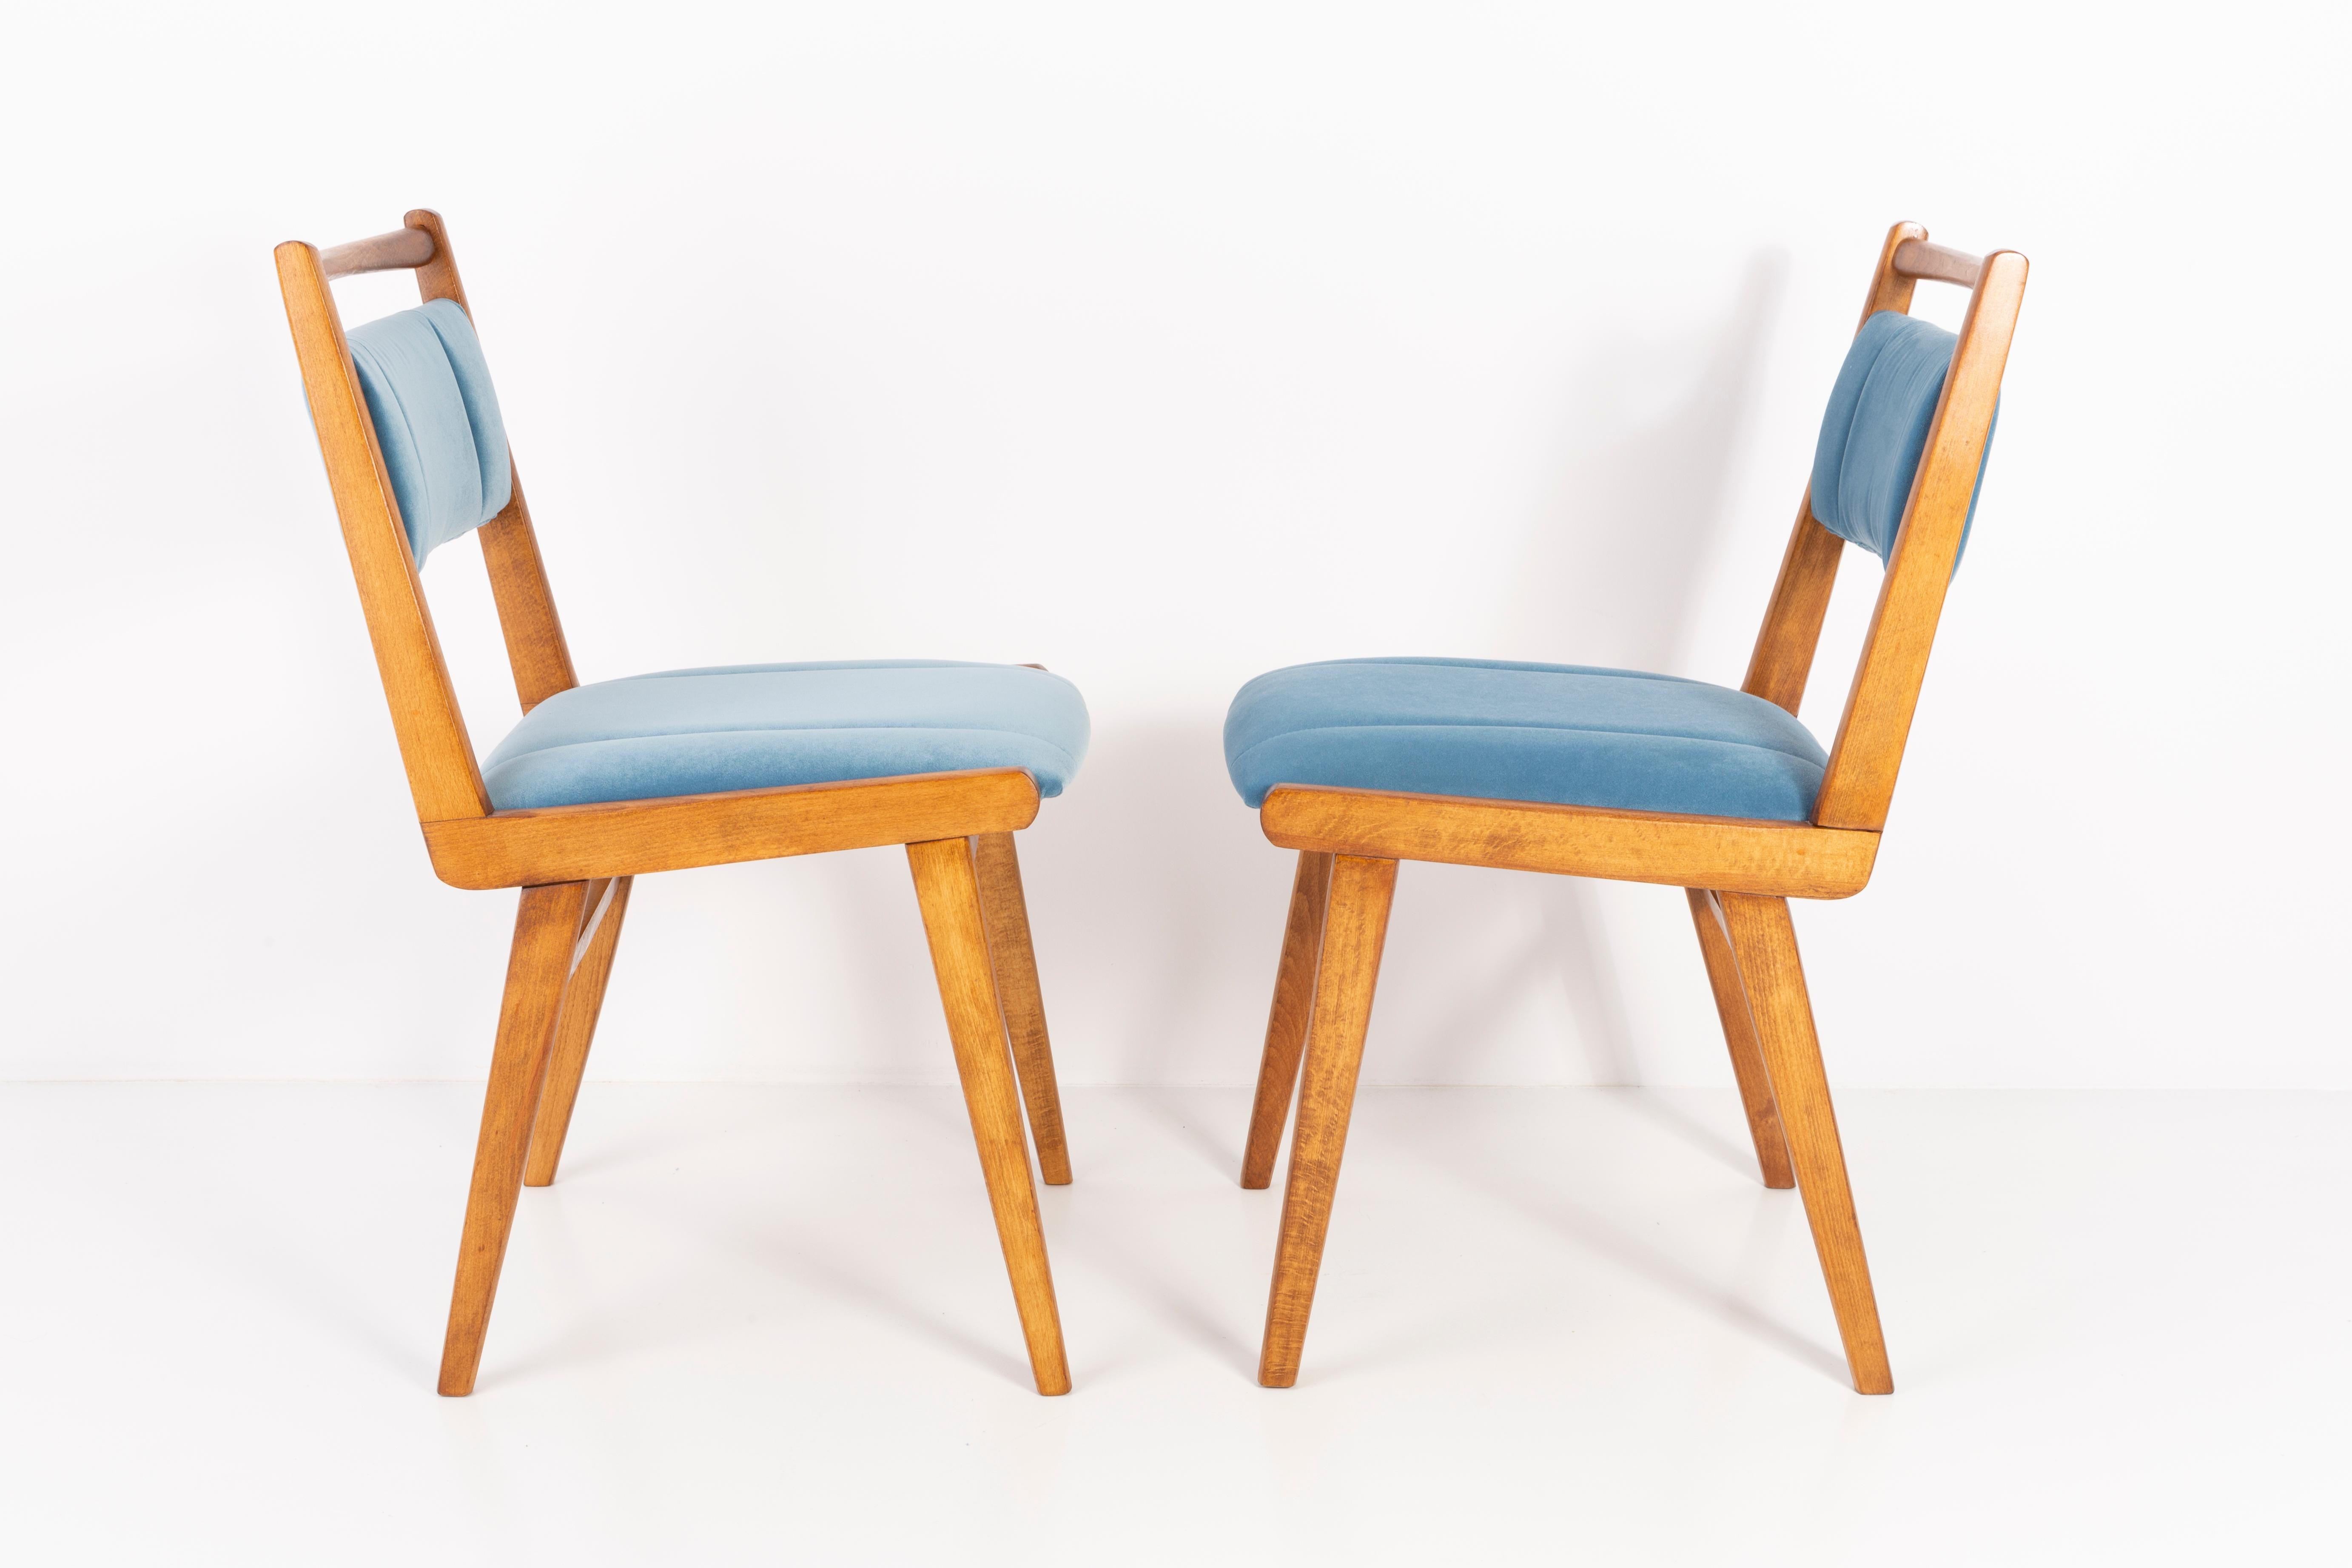 Stühle entworfen von Prof. Rajmund Halas. Es handelt sich um ein Modell vom Typ JAR. Hergestellt aus Buchenholz. Die Stühle sind komplett neu gepolstert, die Holzarbeiten wurden aufgefrischt. Sitz und Rückenlehne sind mit einem blauen (Nummer 31),